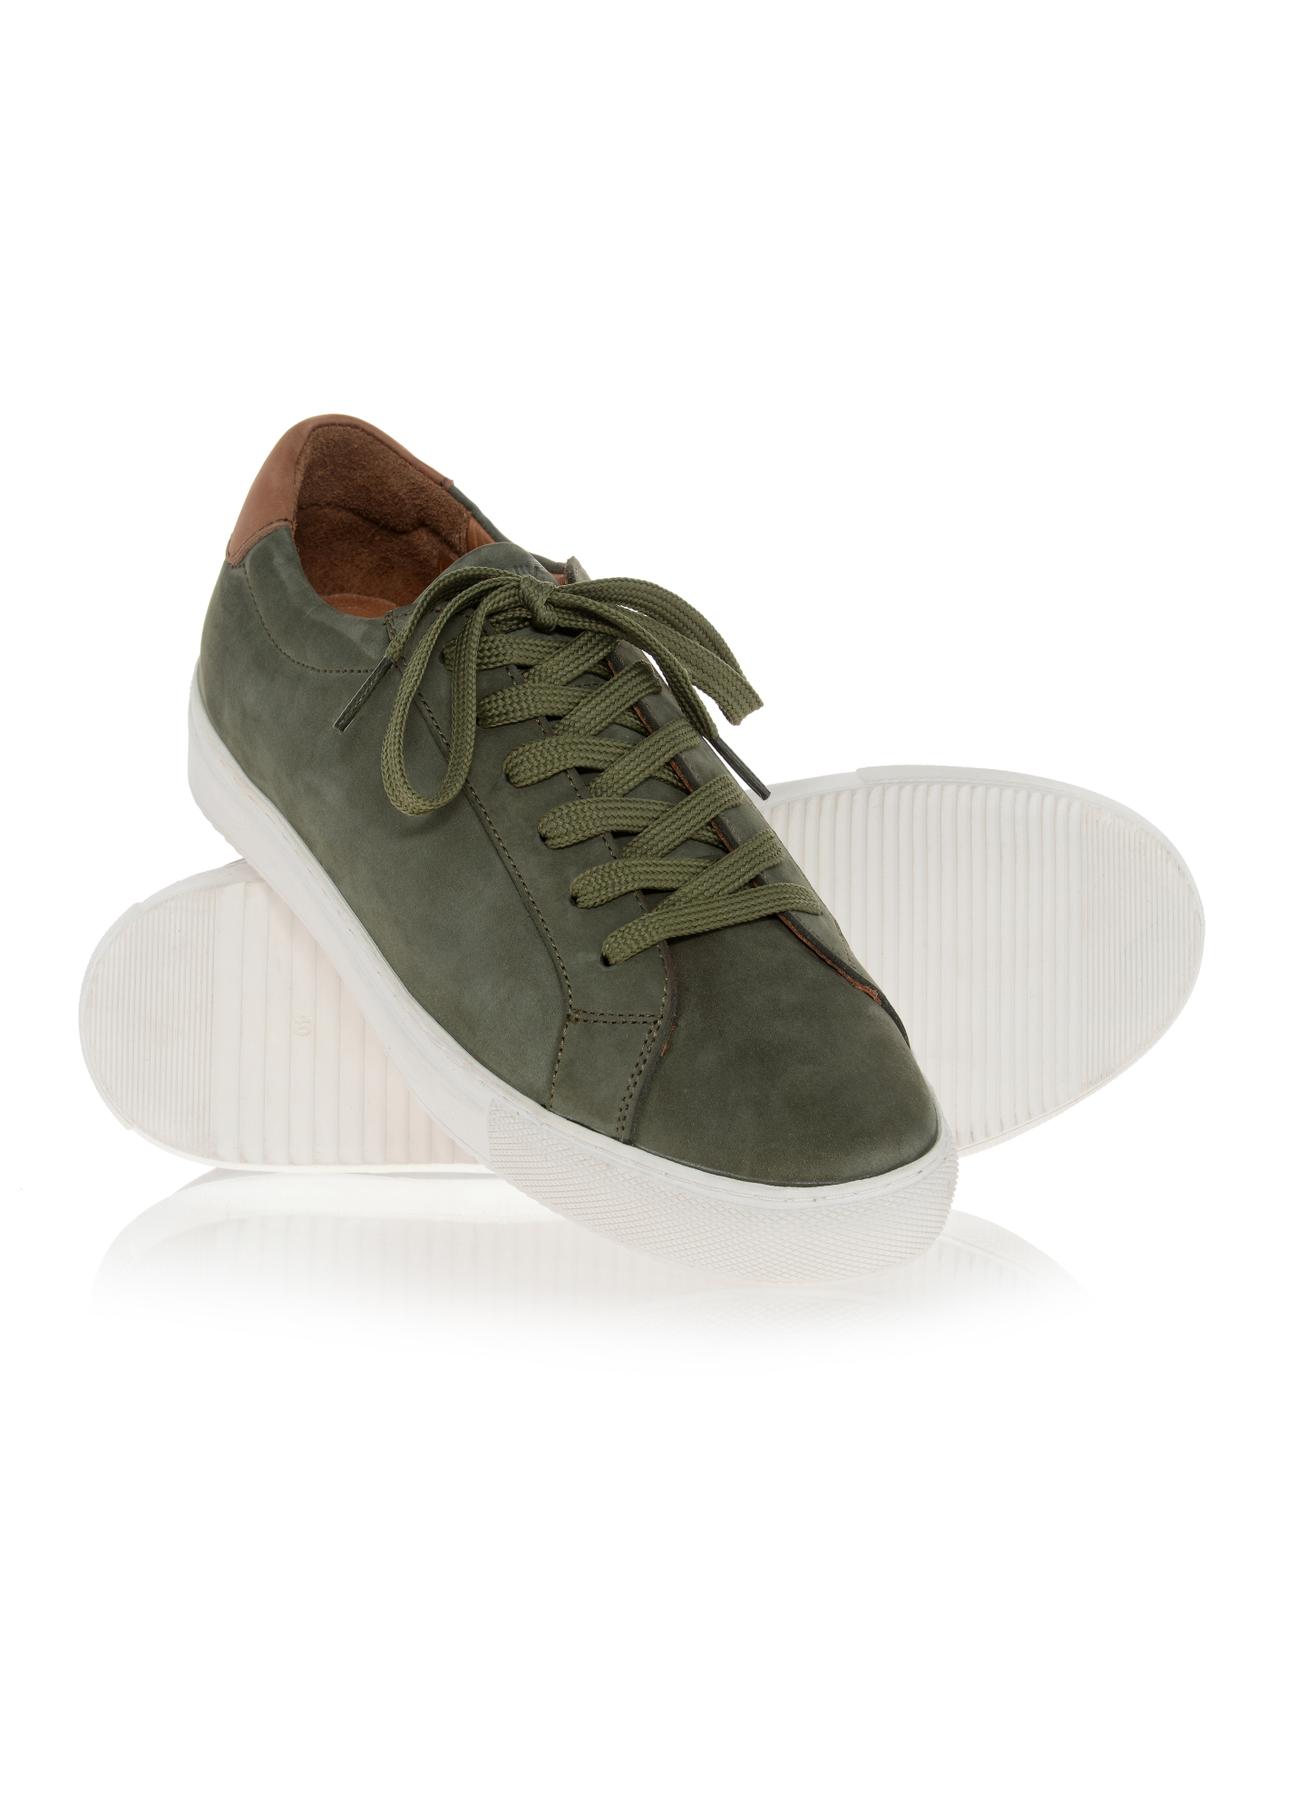 Zielone skórzane sneakersy męskie BUTYM-0438-54(W23)